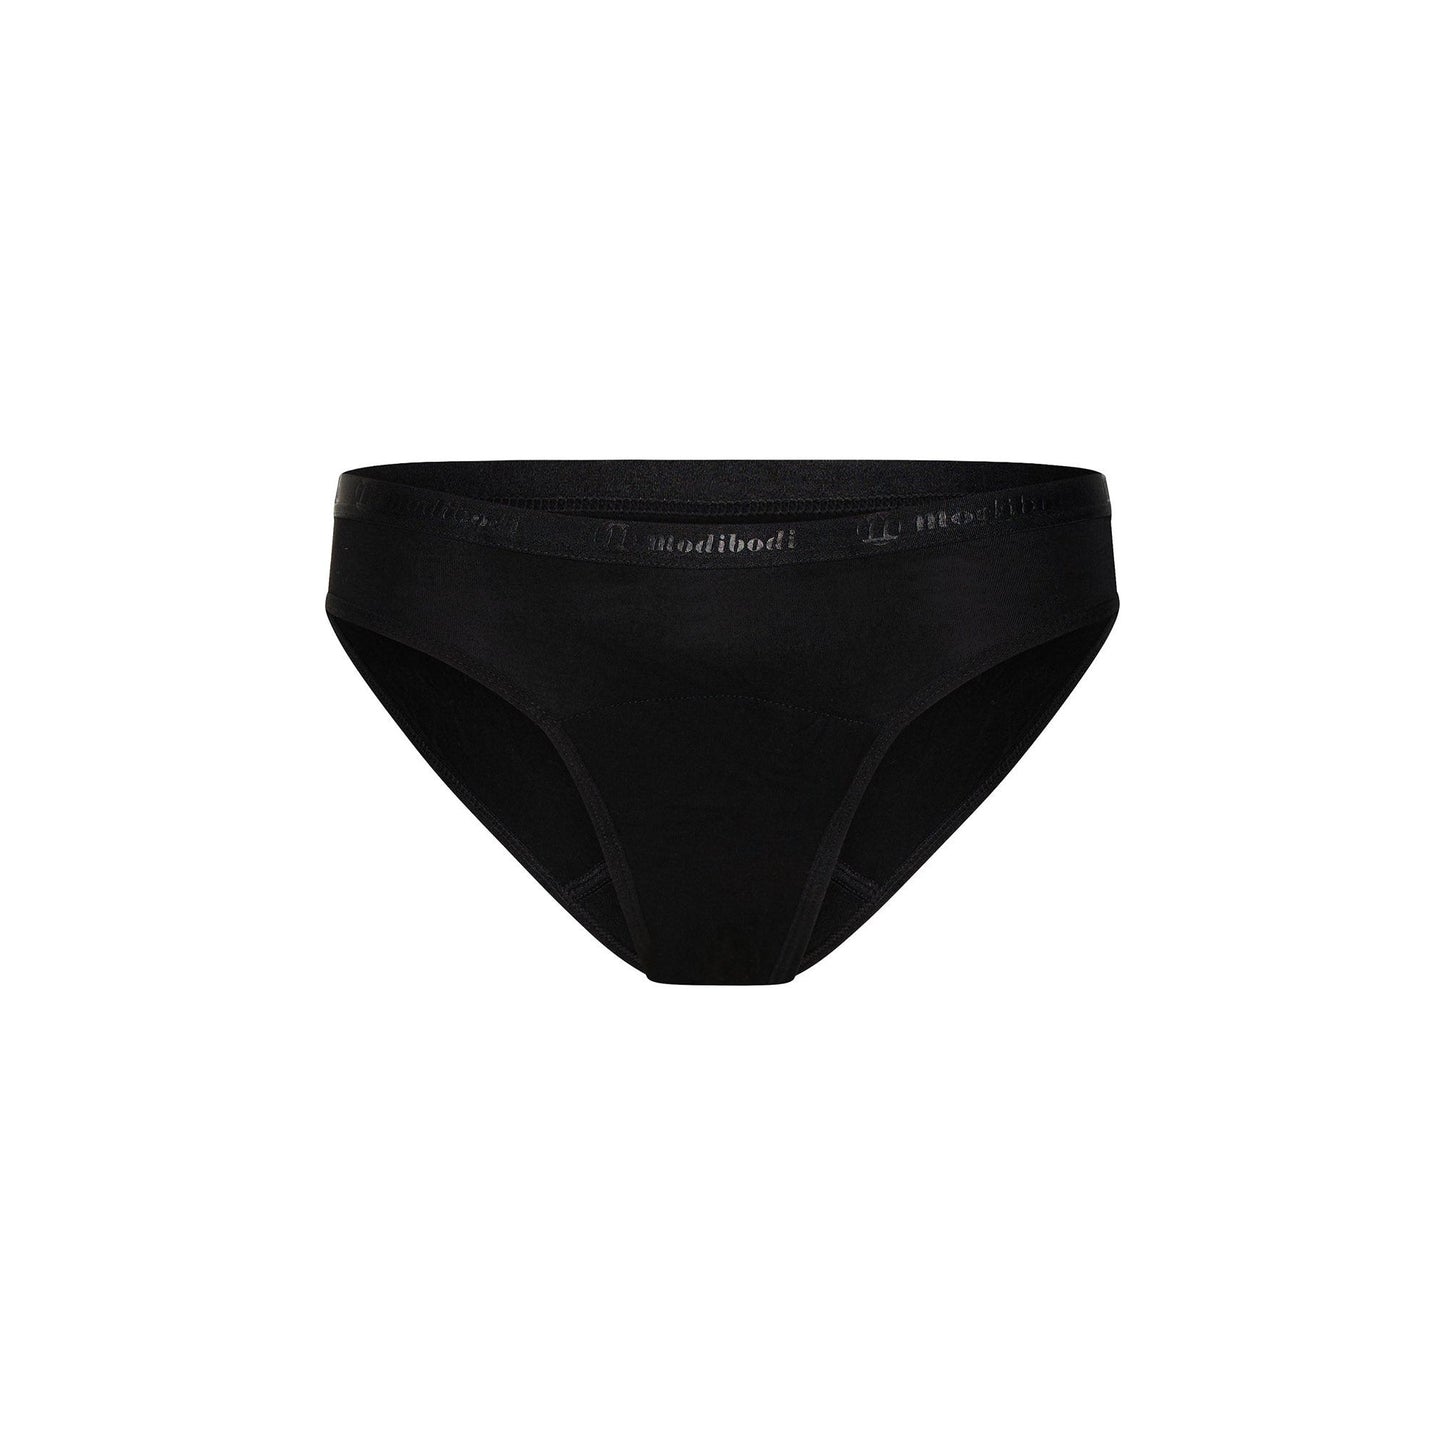 Modibodi Vegan Bikini - Menstruation Underwear - Light Moderate